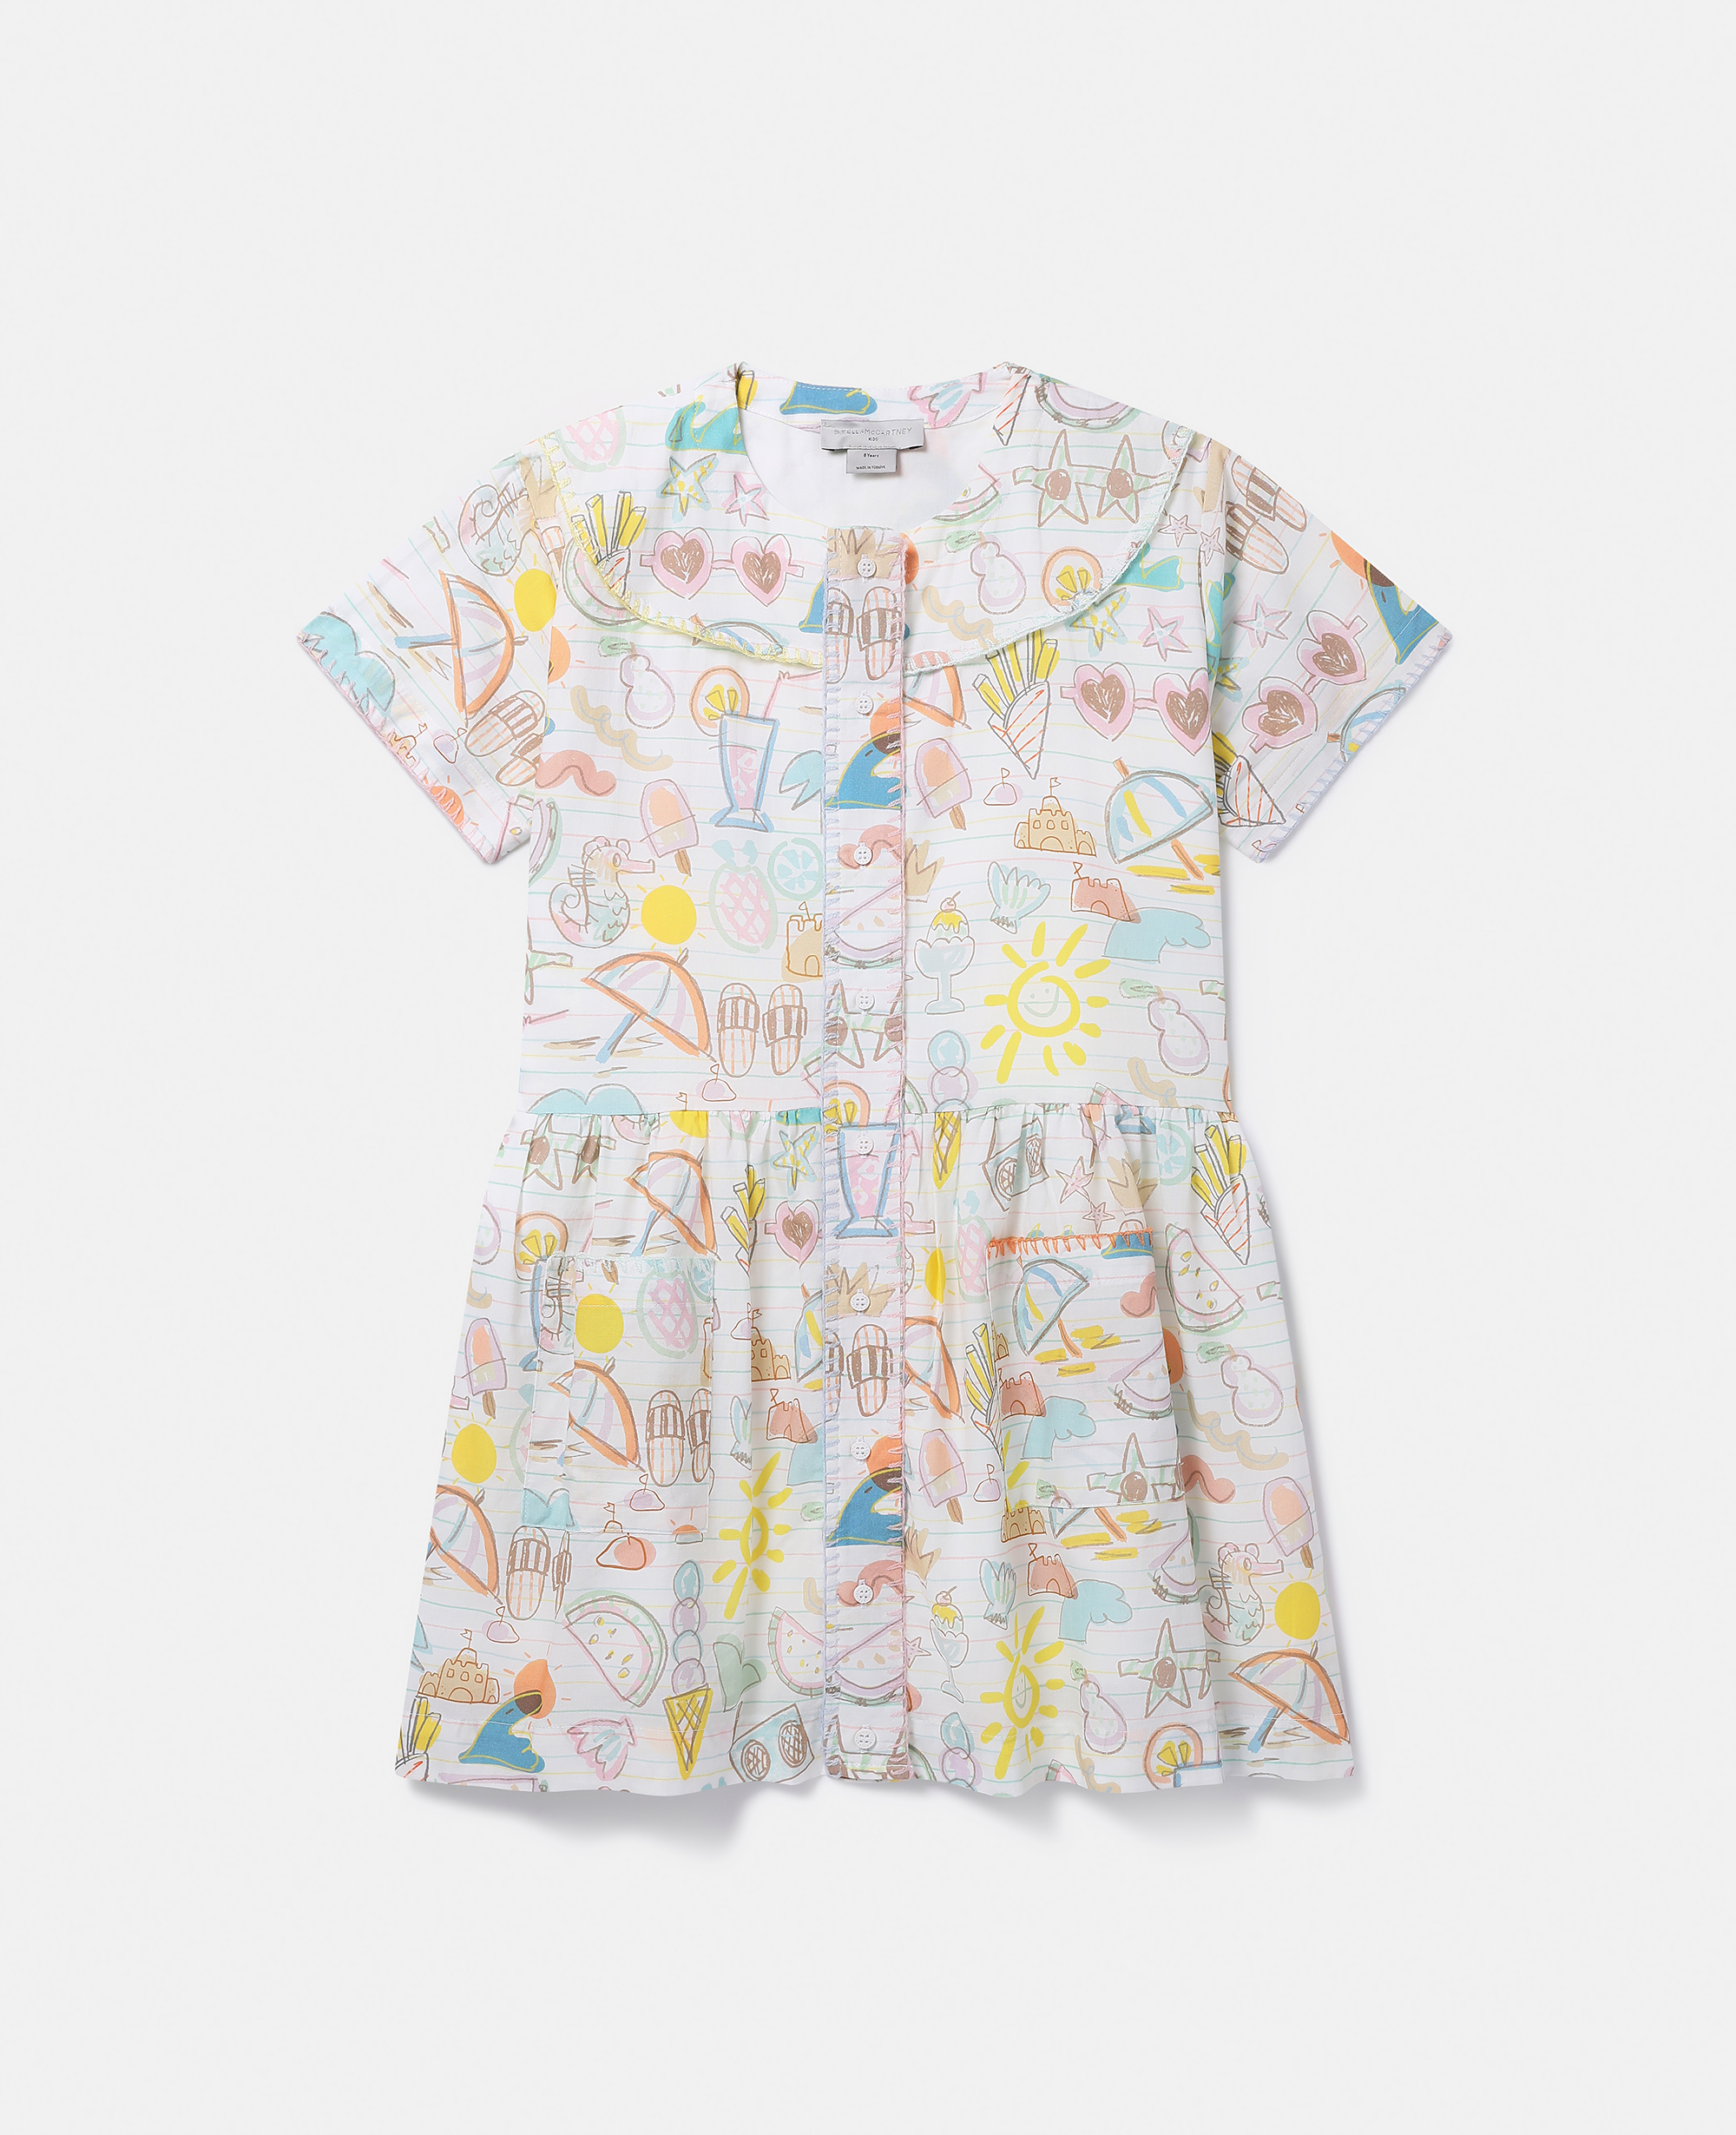 Stella Mccartney Kids' Summer Doodles Print Shirt Dress In Gold